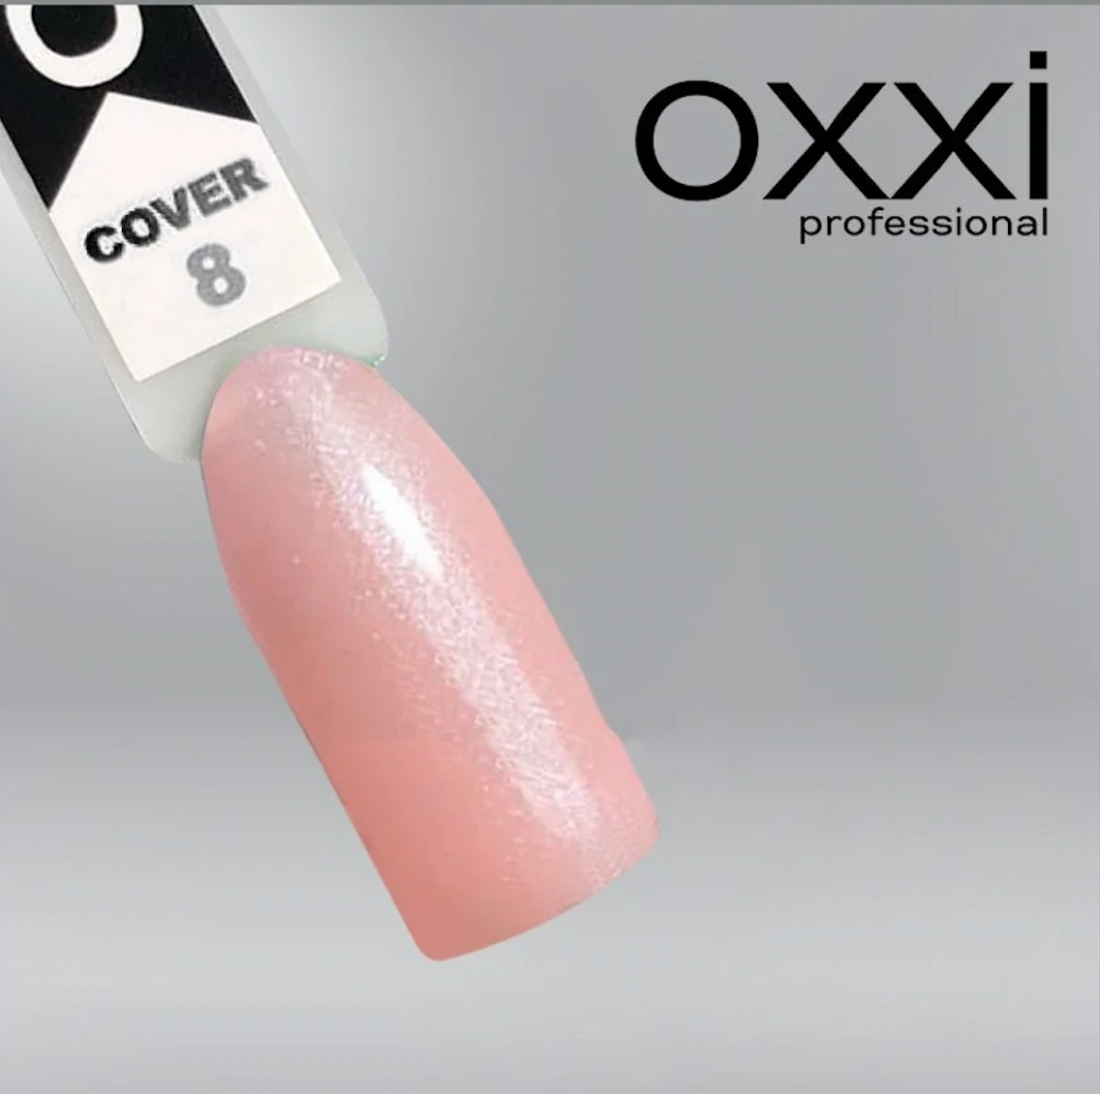 Камуфлирующая база для гель-лака Oxxi Professional Cover Base Coat 8 нежно-розовая с серебряным шиммером, 10мл